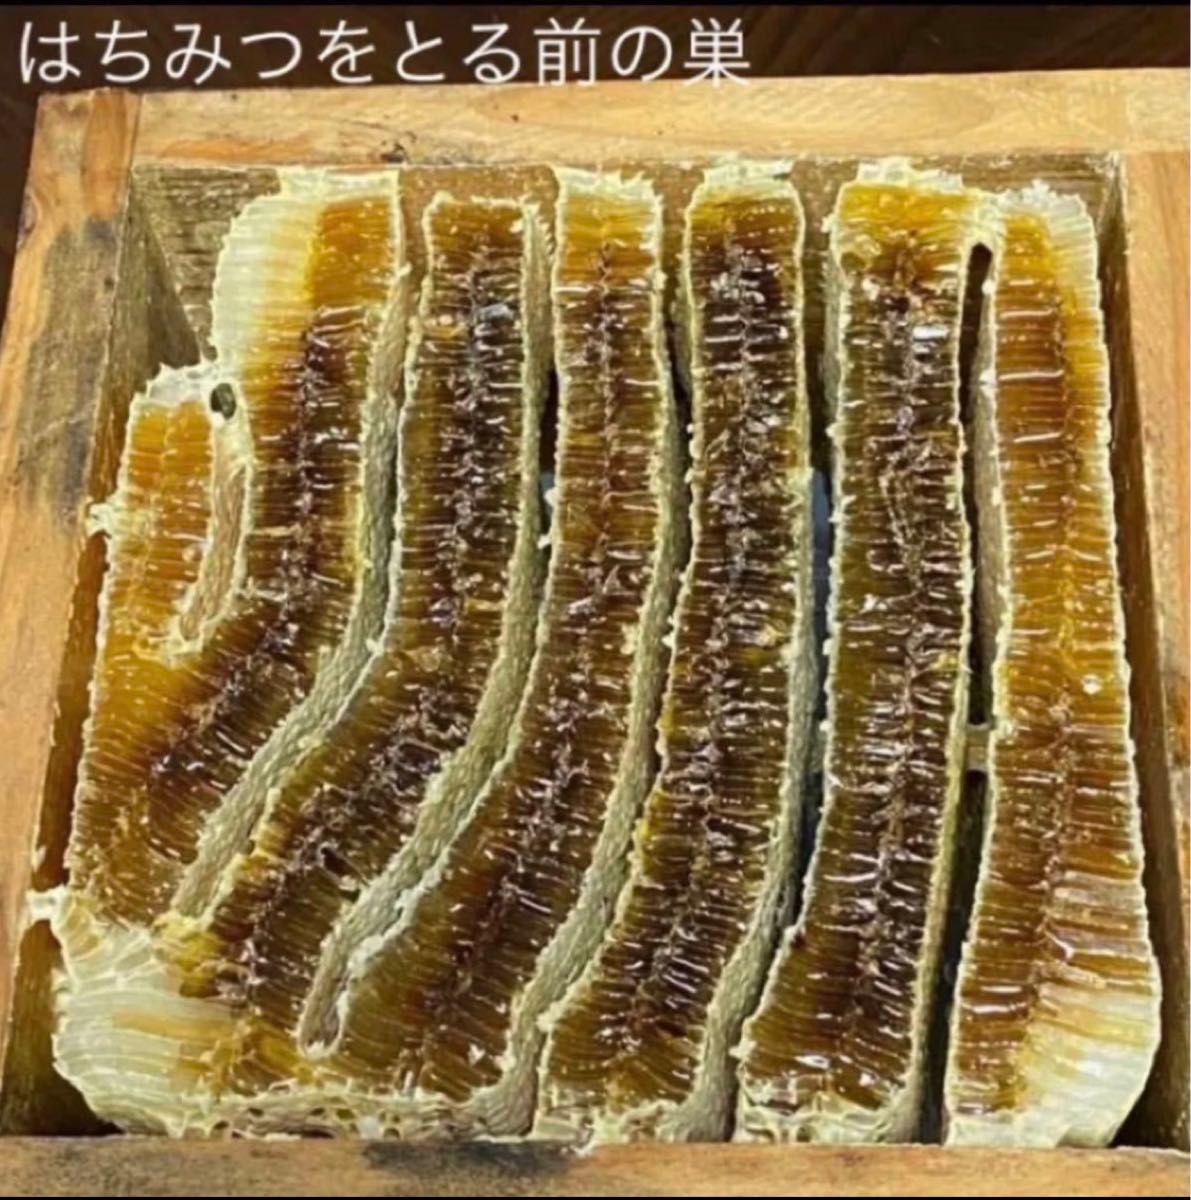 専用出品 リピート割 日本ミツバチ 150g 非加熱 生はちみつ 抗生物質なし ウイルス対策 養蜂家の一貫生産 無添加